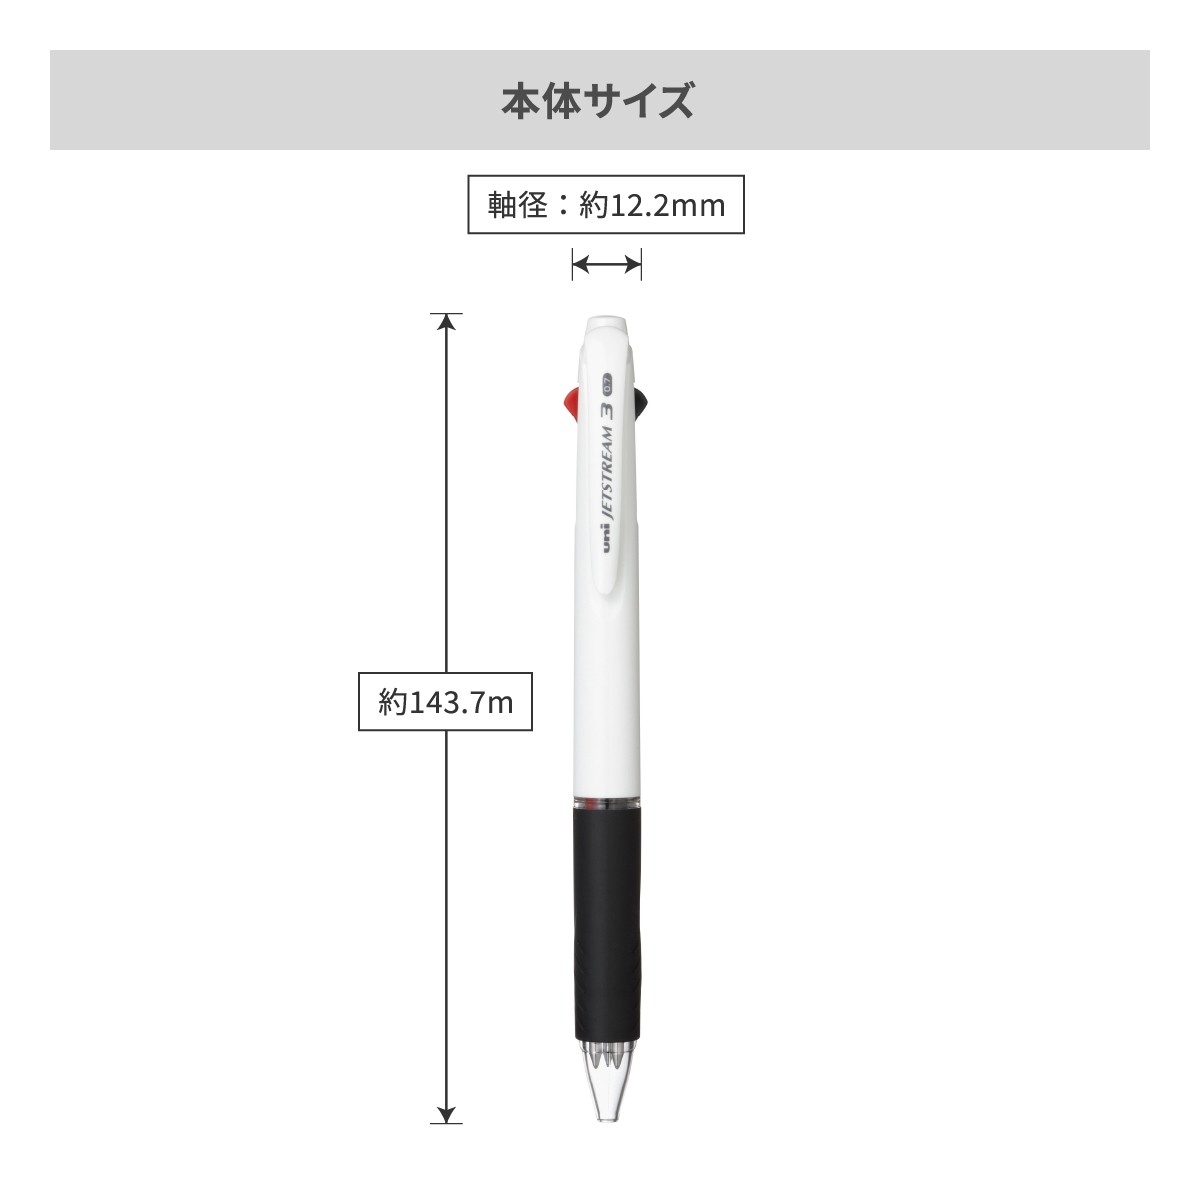 三菱鉛筆 ジェットストリーム 白軸 3色ボールペン 0.7mm【名入れボールペン / パッド印刷】 画像5